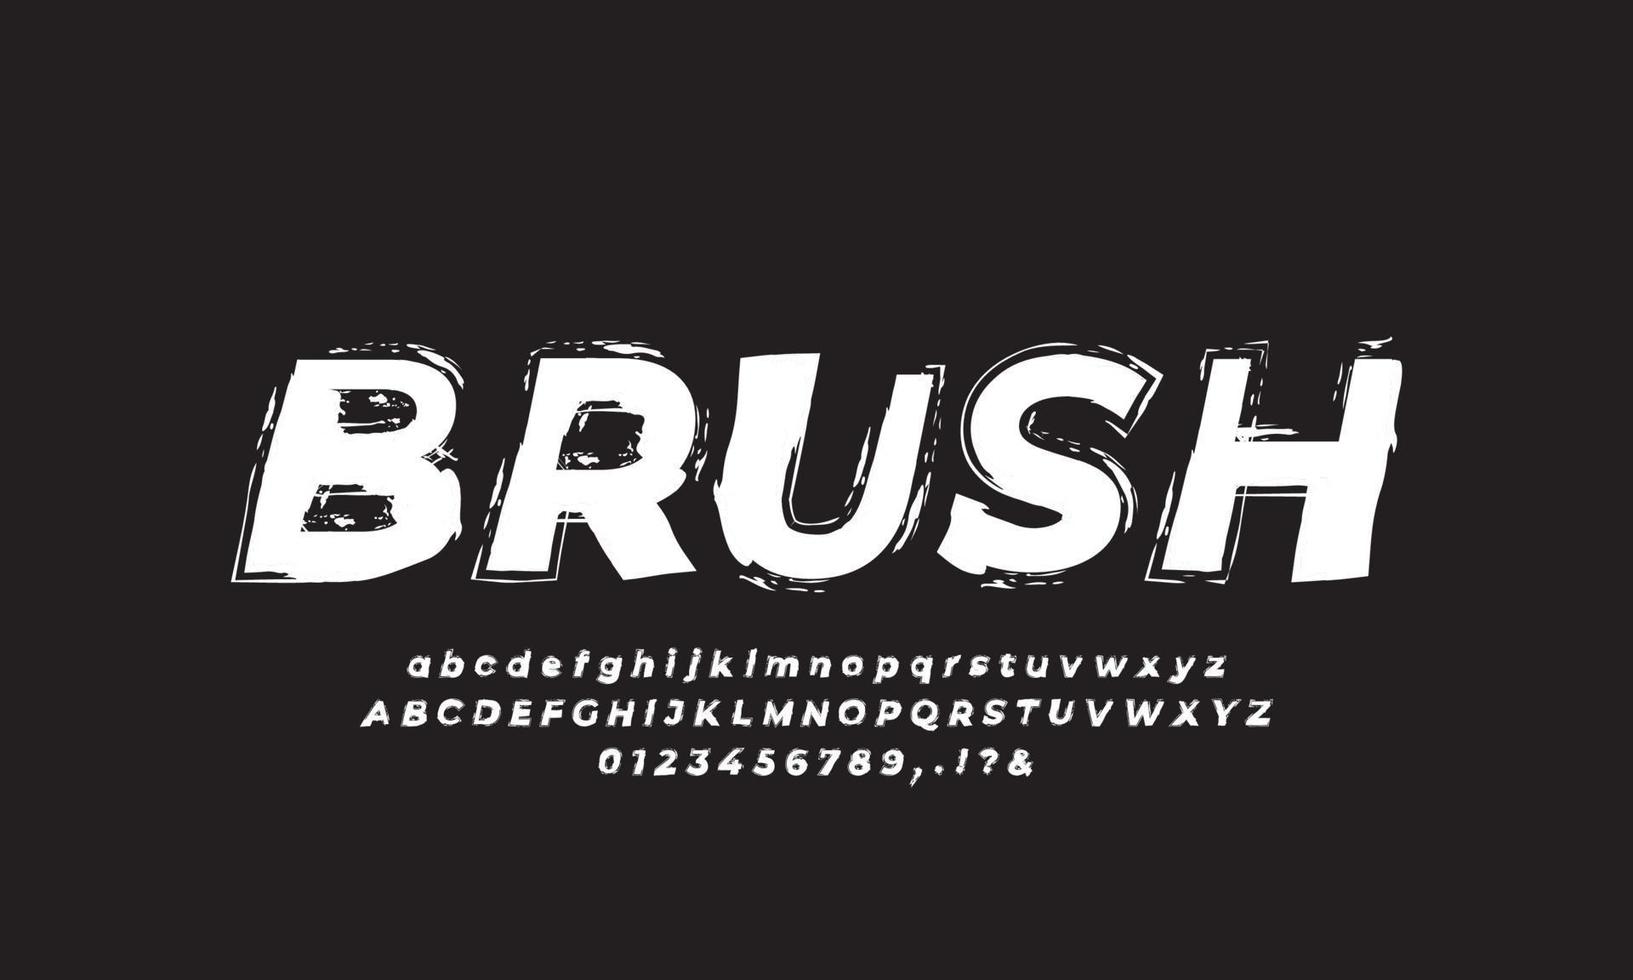 borstel lettertype verf kunst zwart-wit alfabet nummering vector design